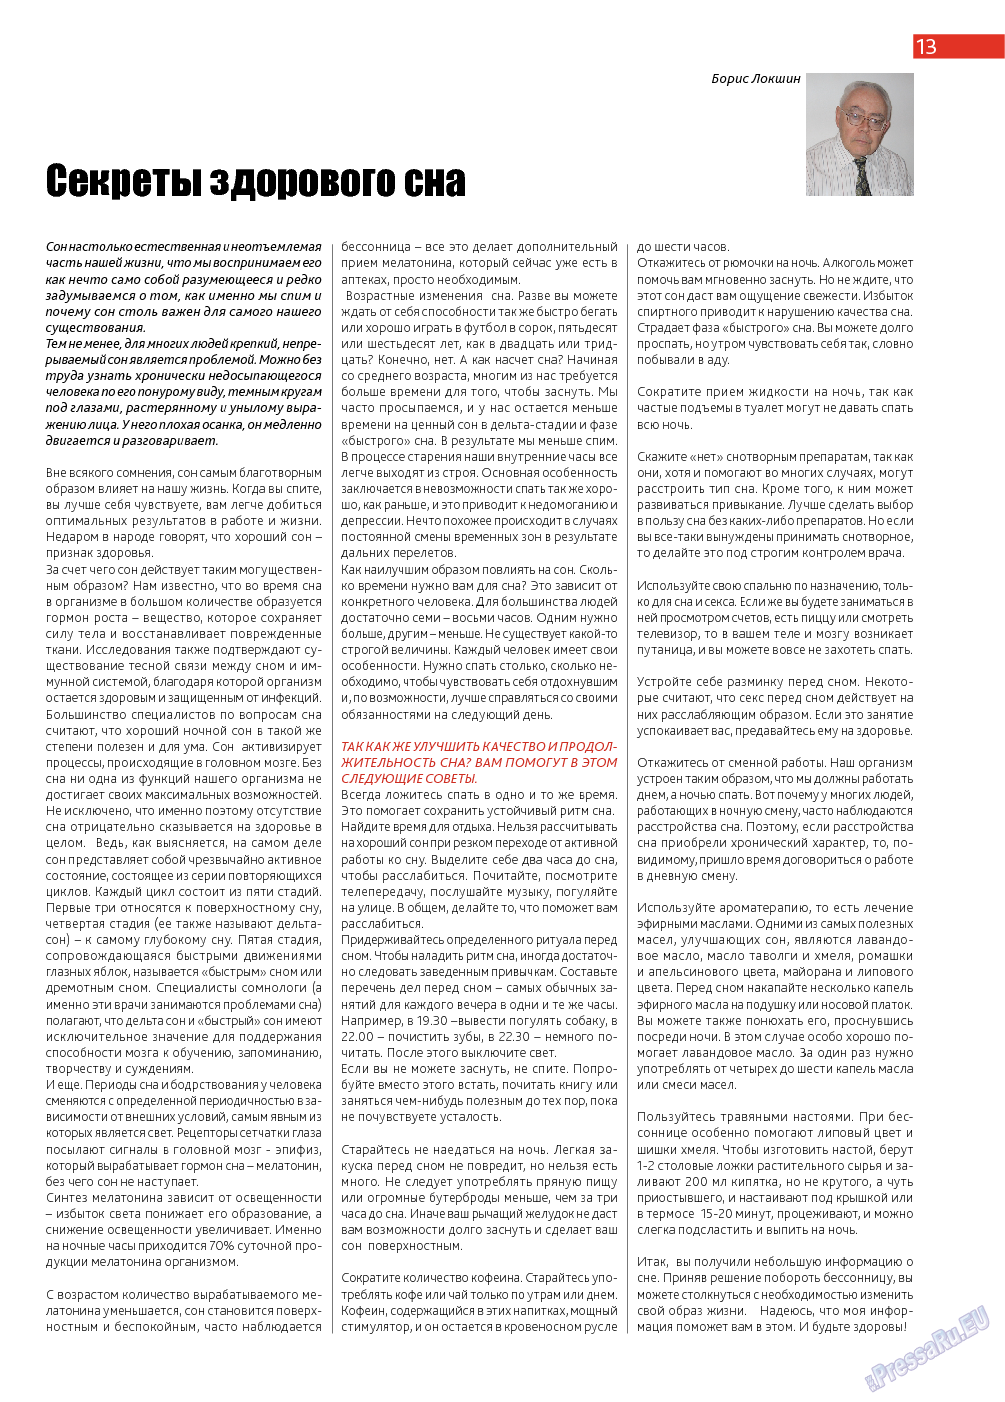 Афиша Augsburg (журнал). 2013 год, номер 11, стр. 13